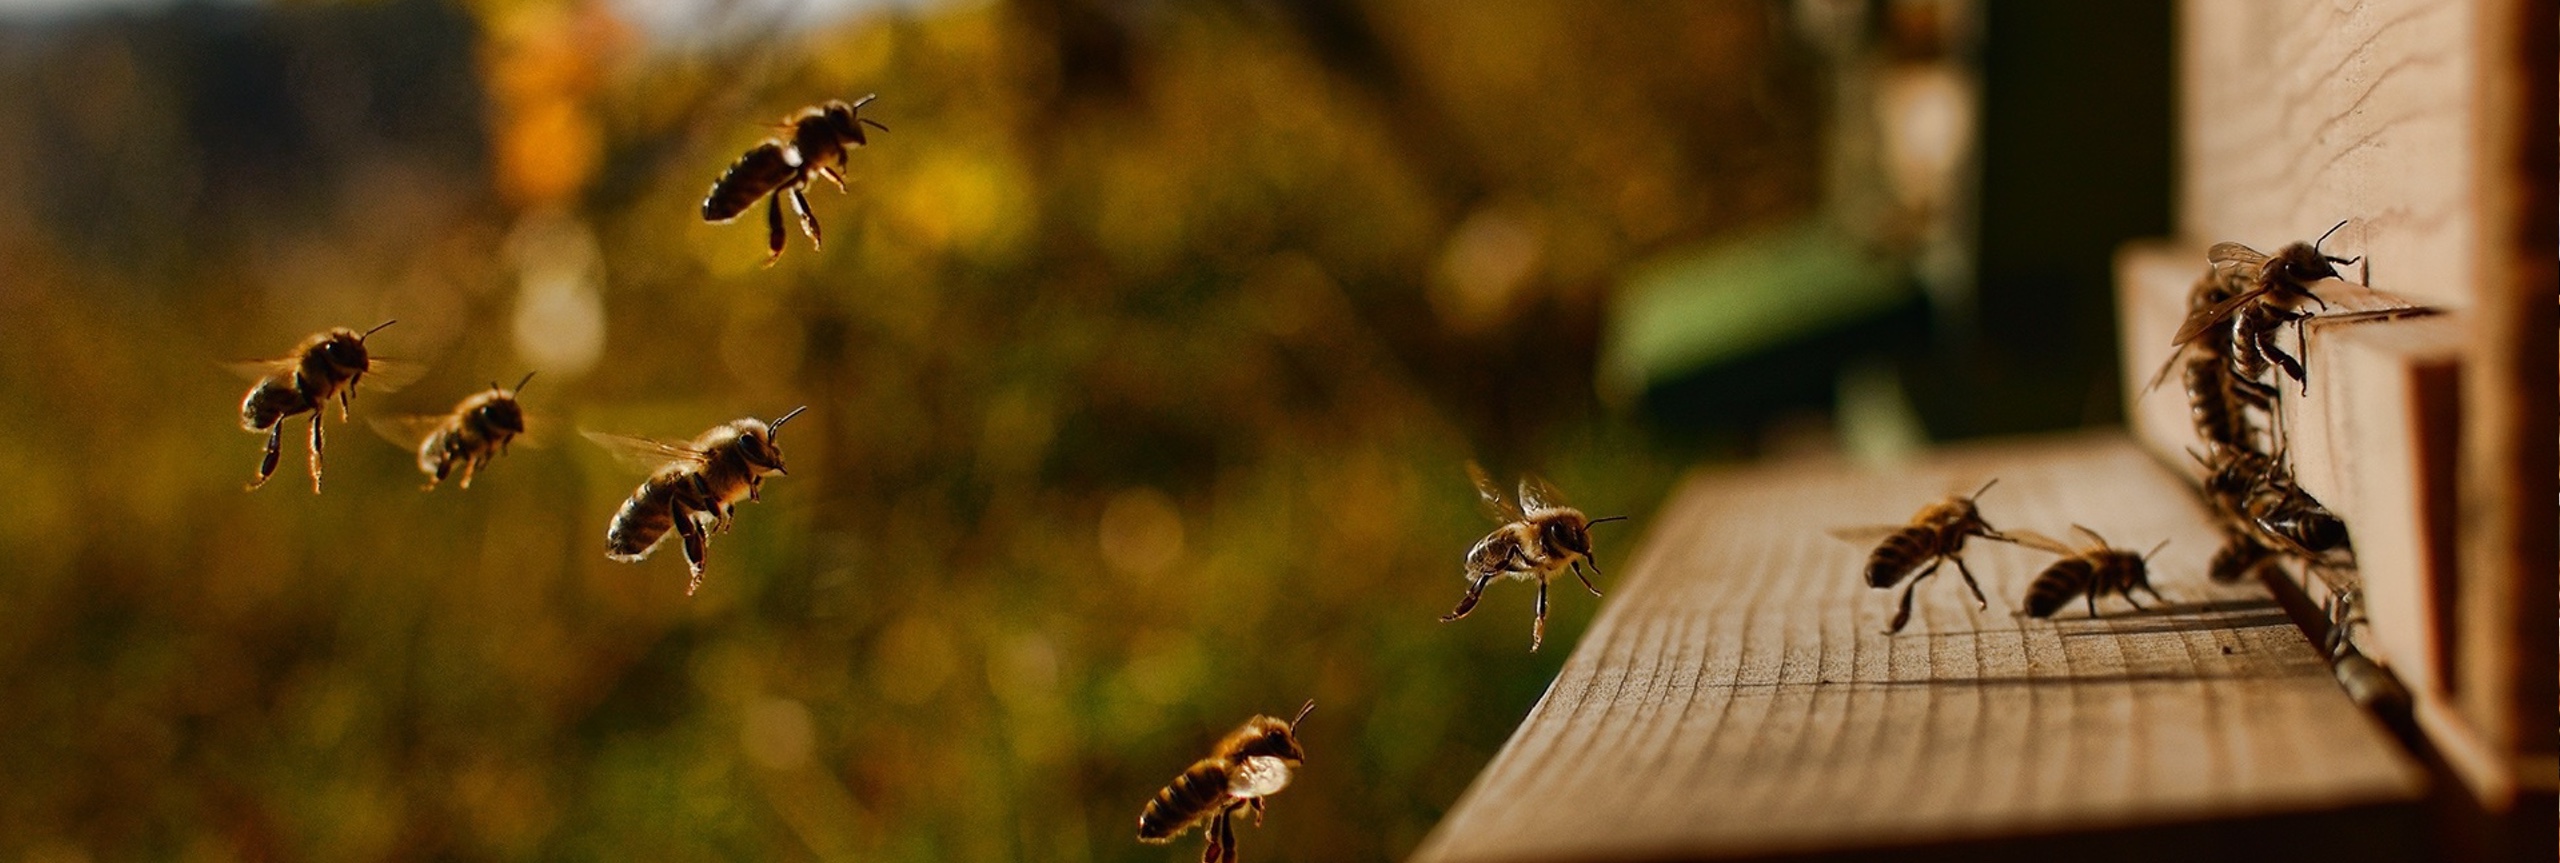 vliegende bijen op een stuk hout